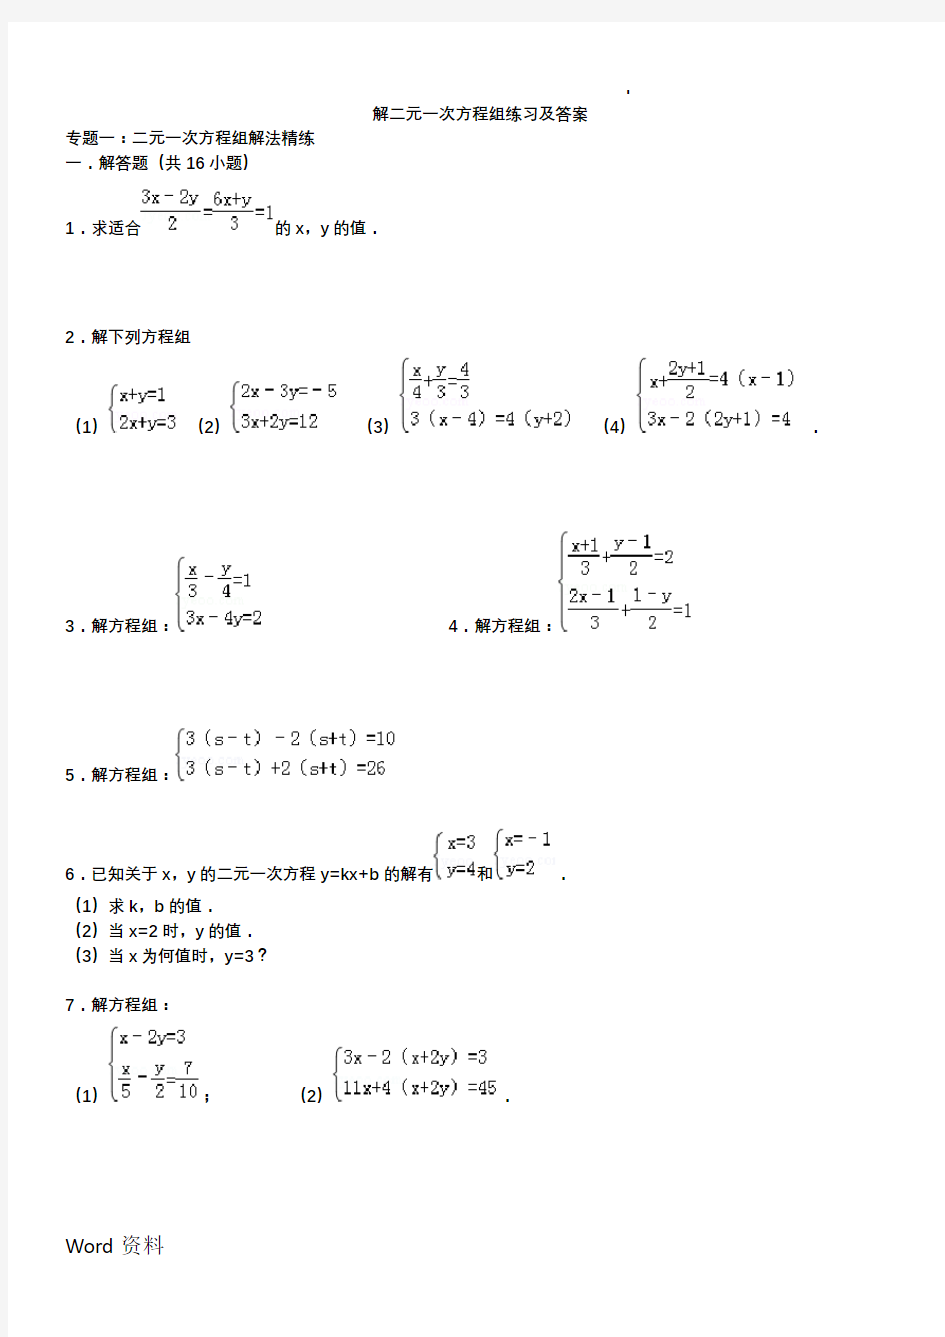 二元一次方程组(例题、解方程组、练习及答案)